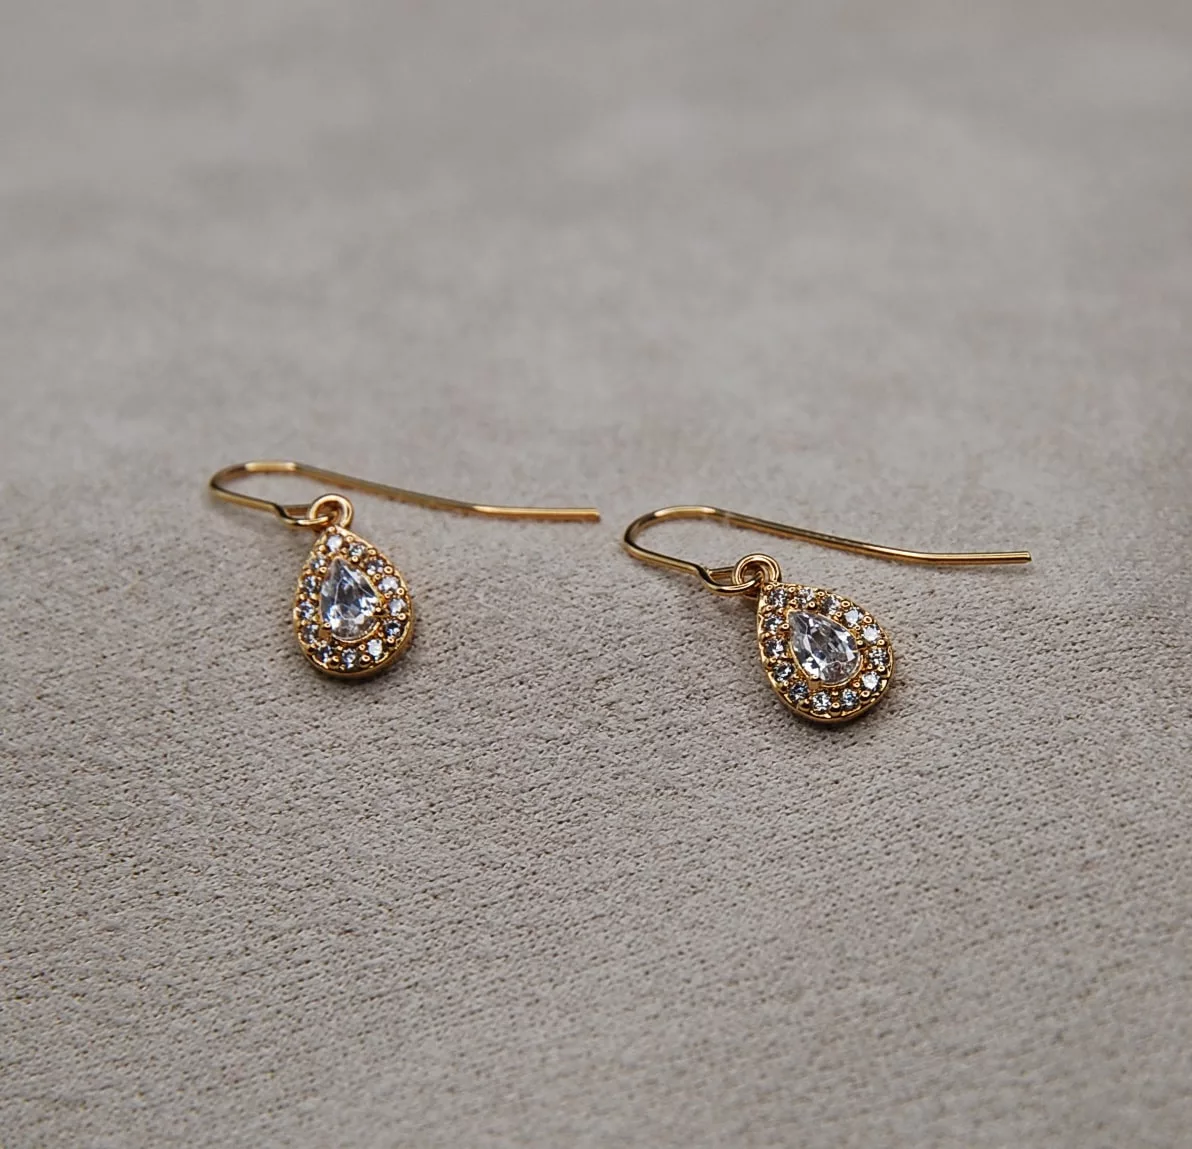 Ajoutez une touche de luxe à votre tenue avec ces boucles d'oreille en argent 925 plaqué or, fabriquées à la main par les artisans d'Alymis. Leur design élégant est le reflet de l'expertise française en matière de bijoux artisanaux.